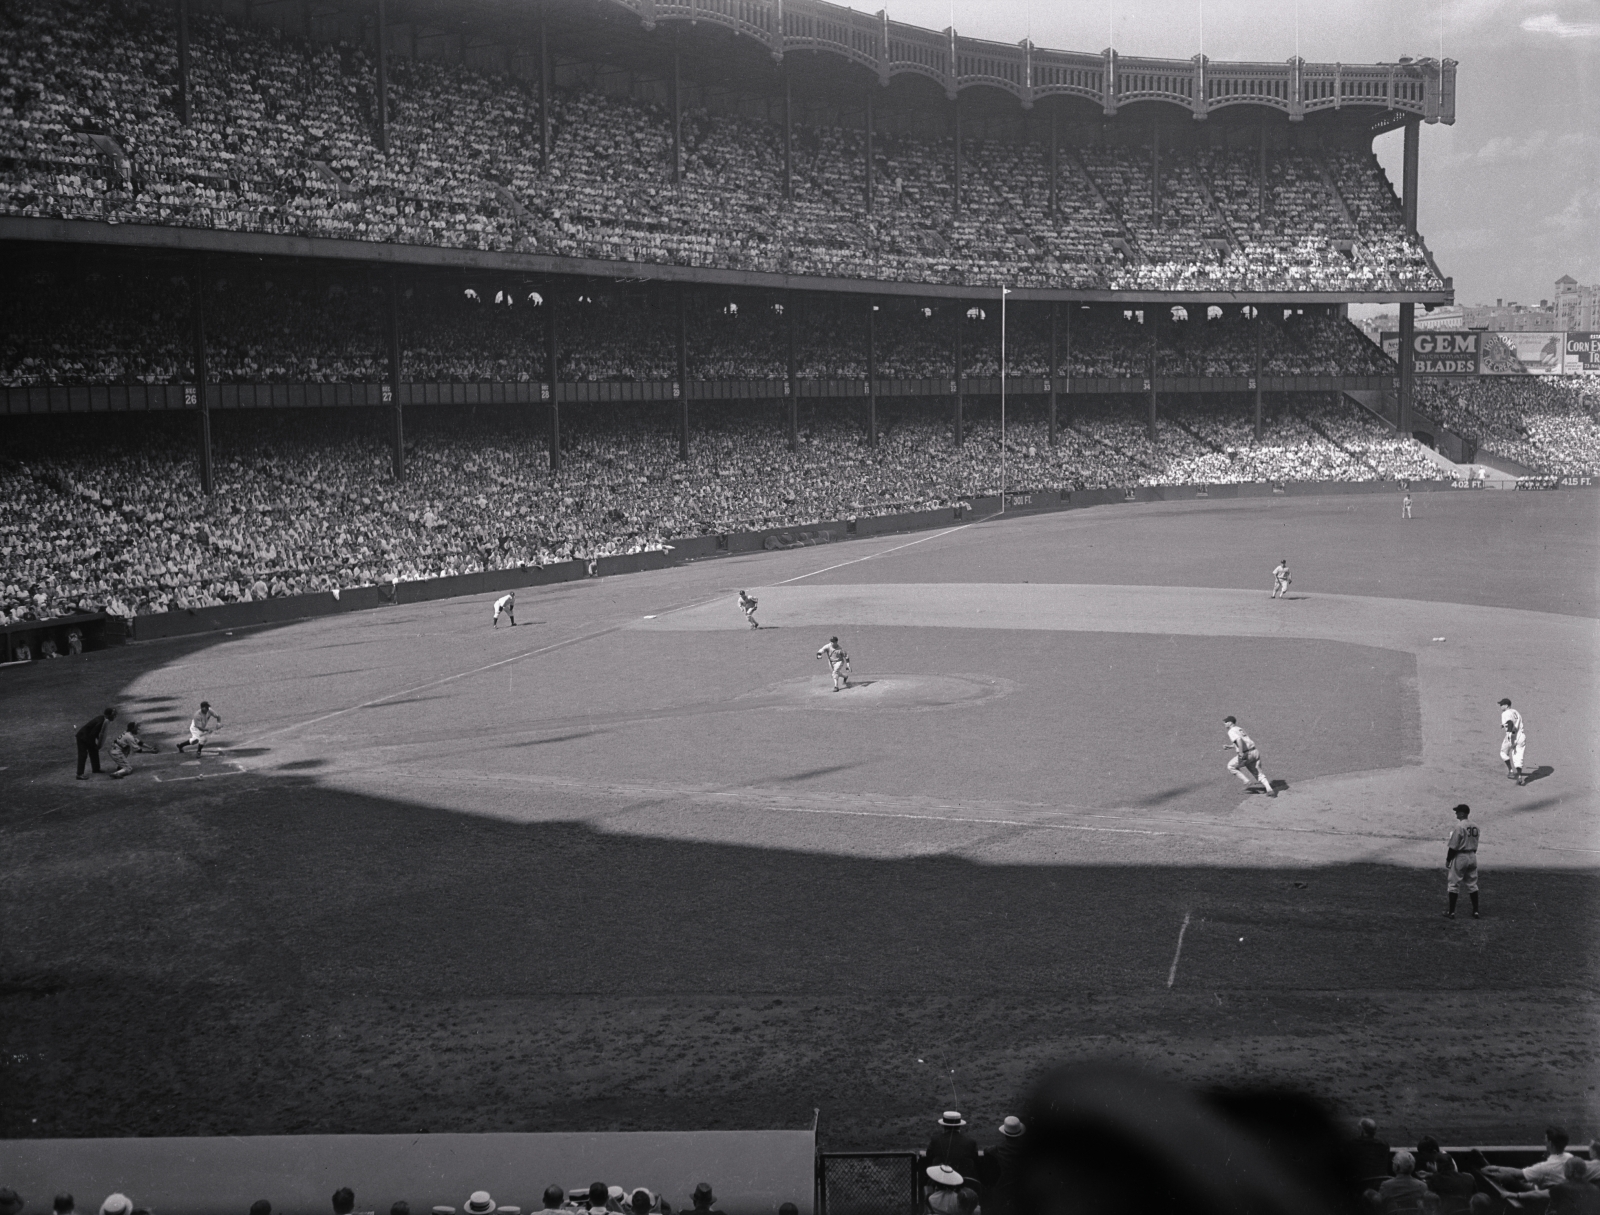 Yankee Stadium: Home Plate, The original Yankee Stadium, lo…